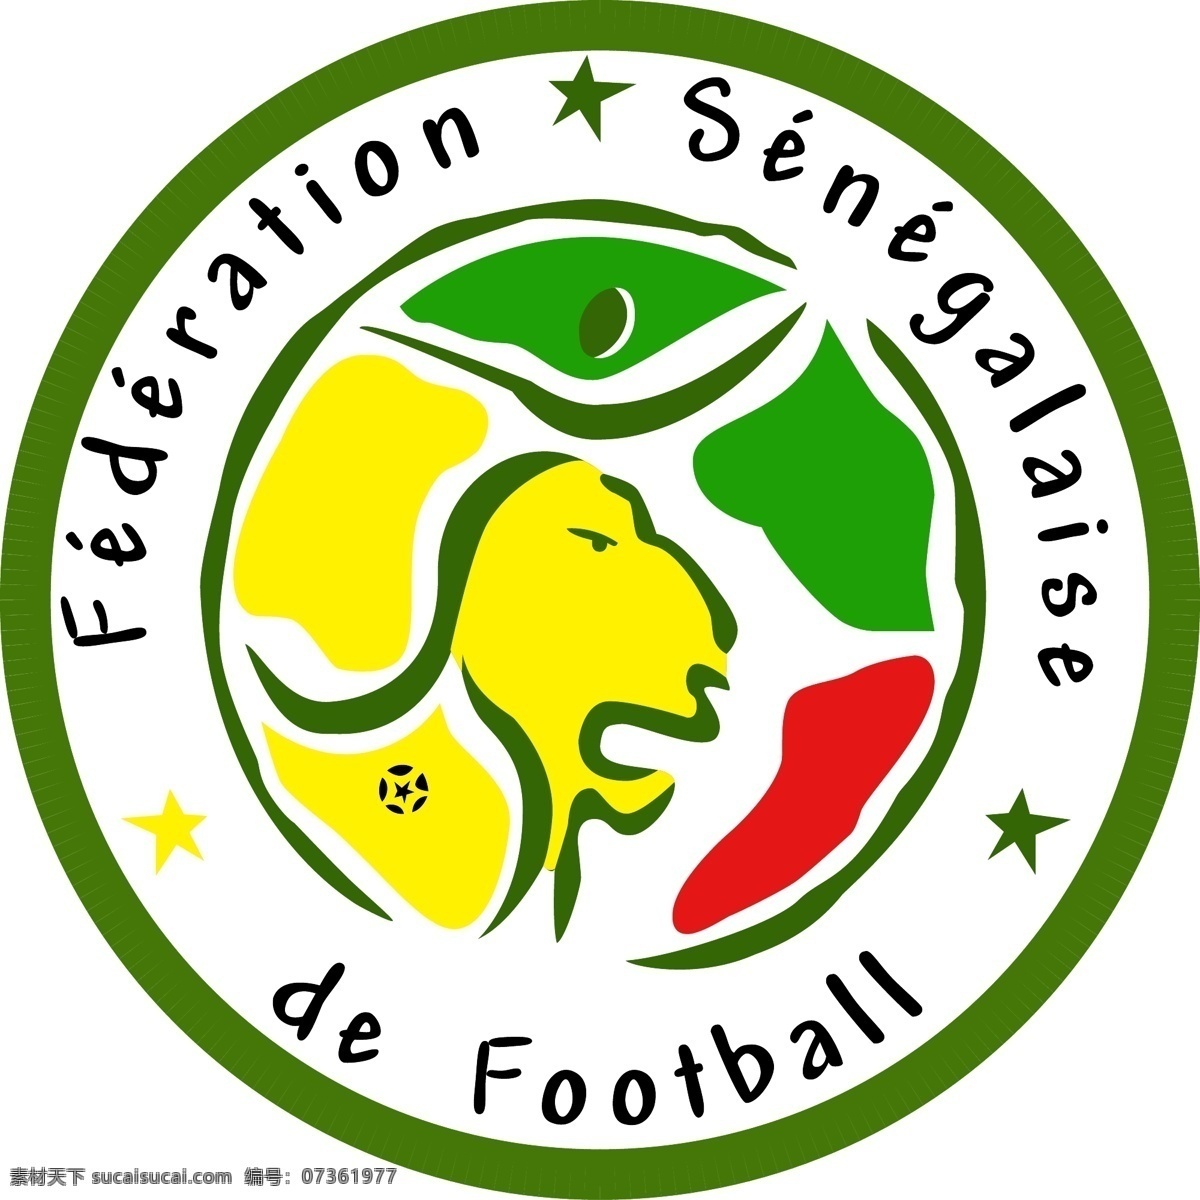 塞内加尔 足球队 队 徽 logo 足球 football soccer 矢量图 标志 运动会徽 标志图标 公共标识标志